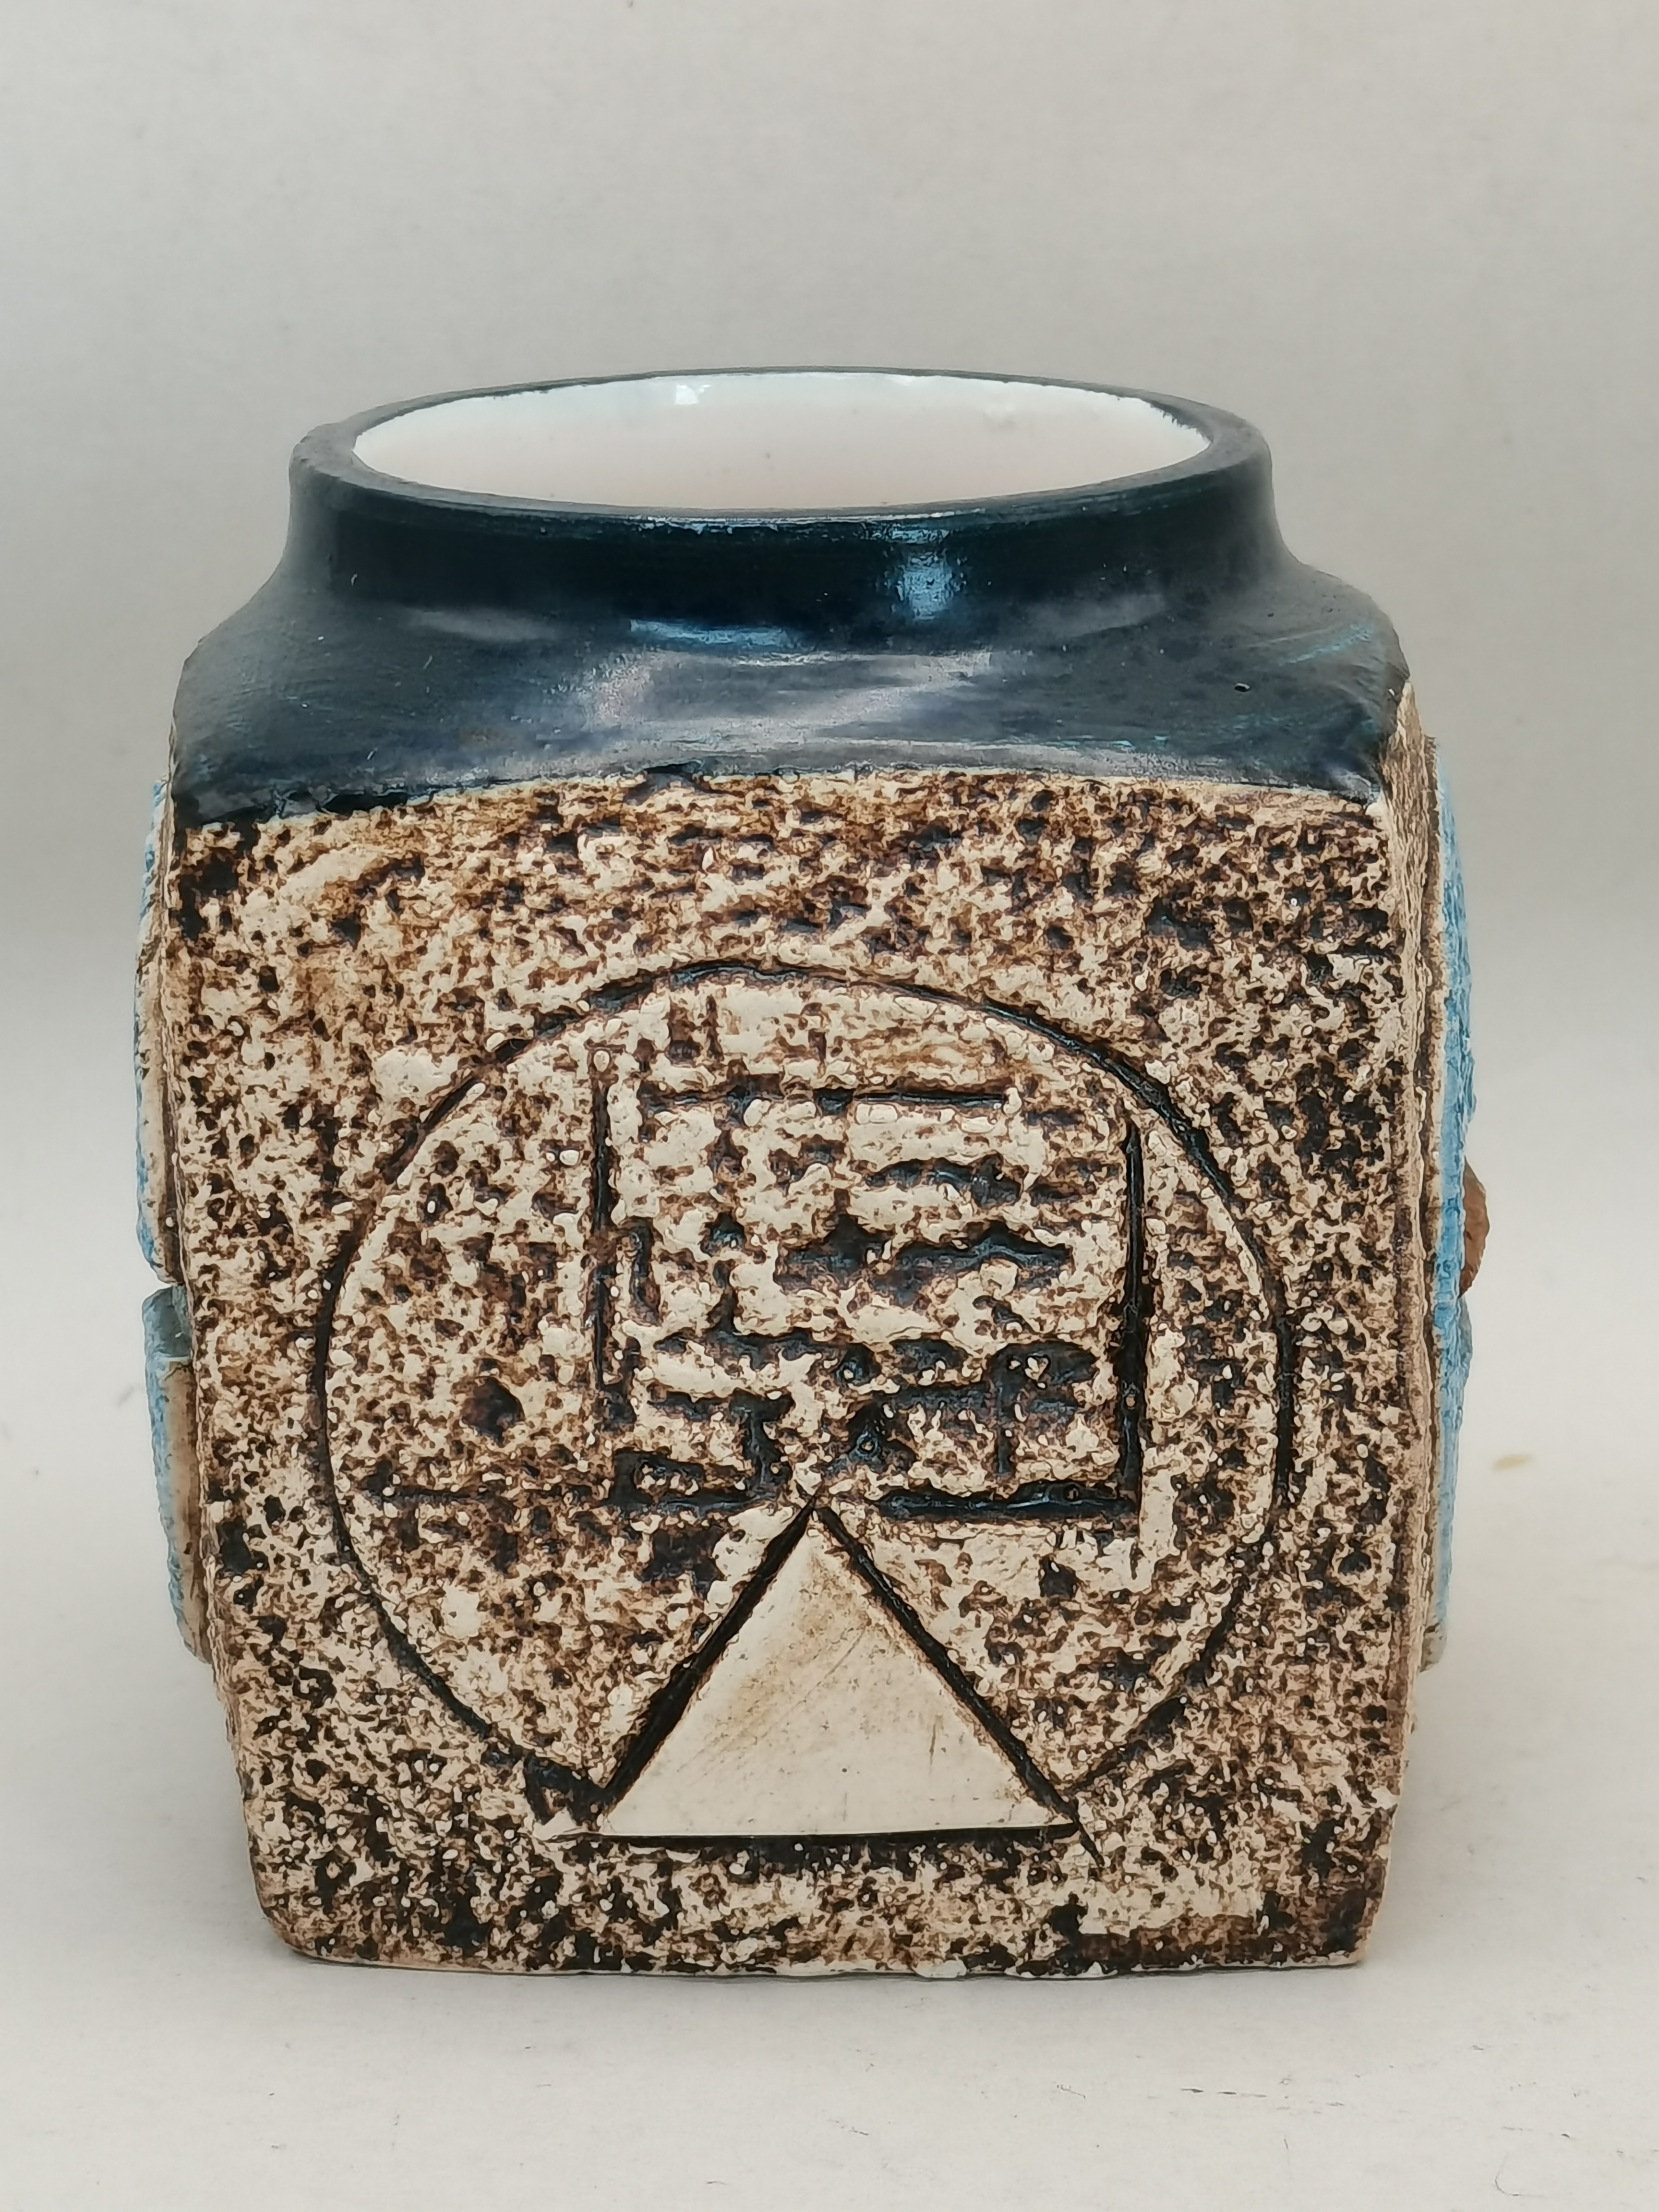 Troika Vase by Avril Bennett 1973 -1979 - Image 2 of 5